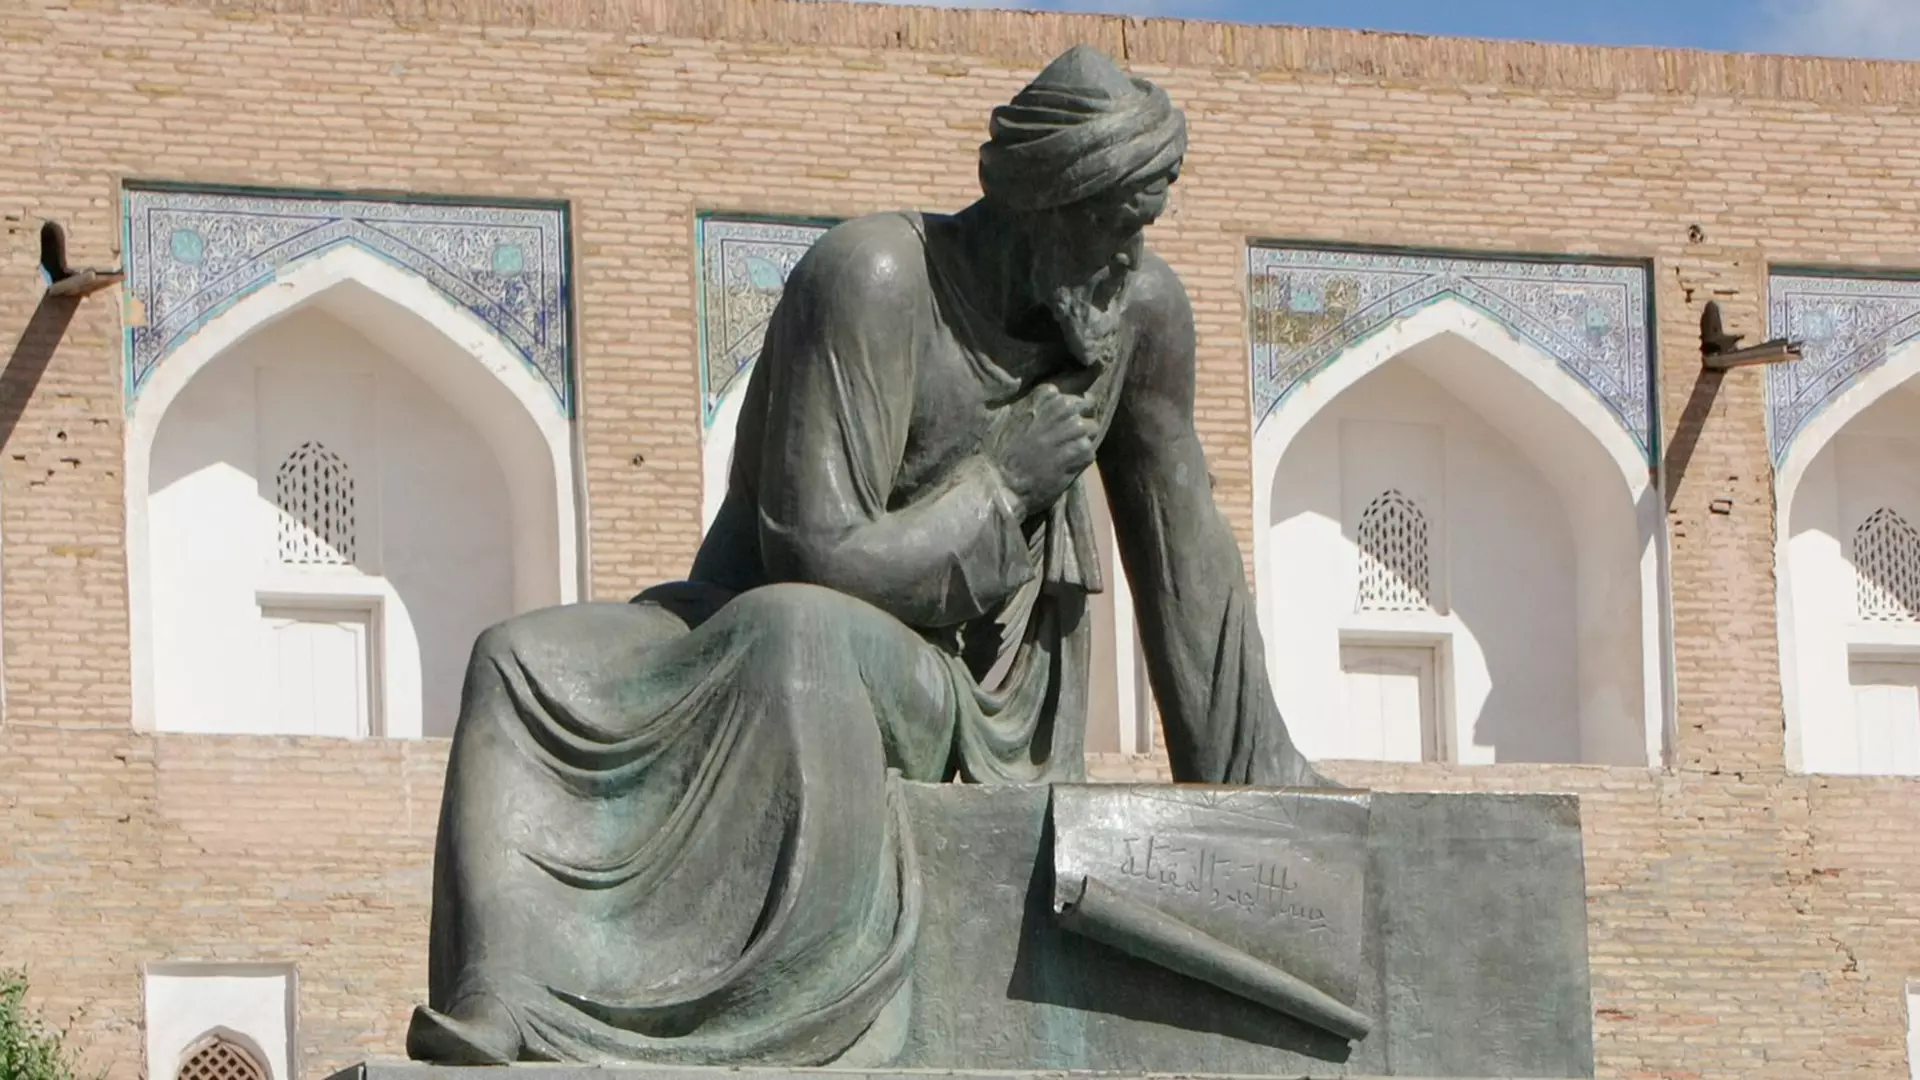 Escultura de Al-Khwarizmi en Khiva